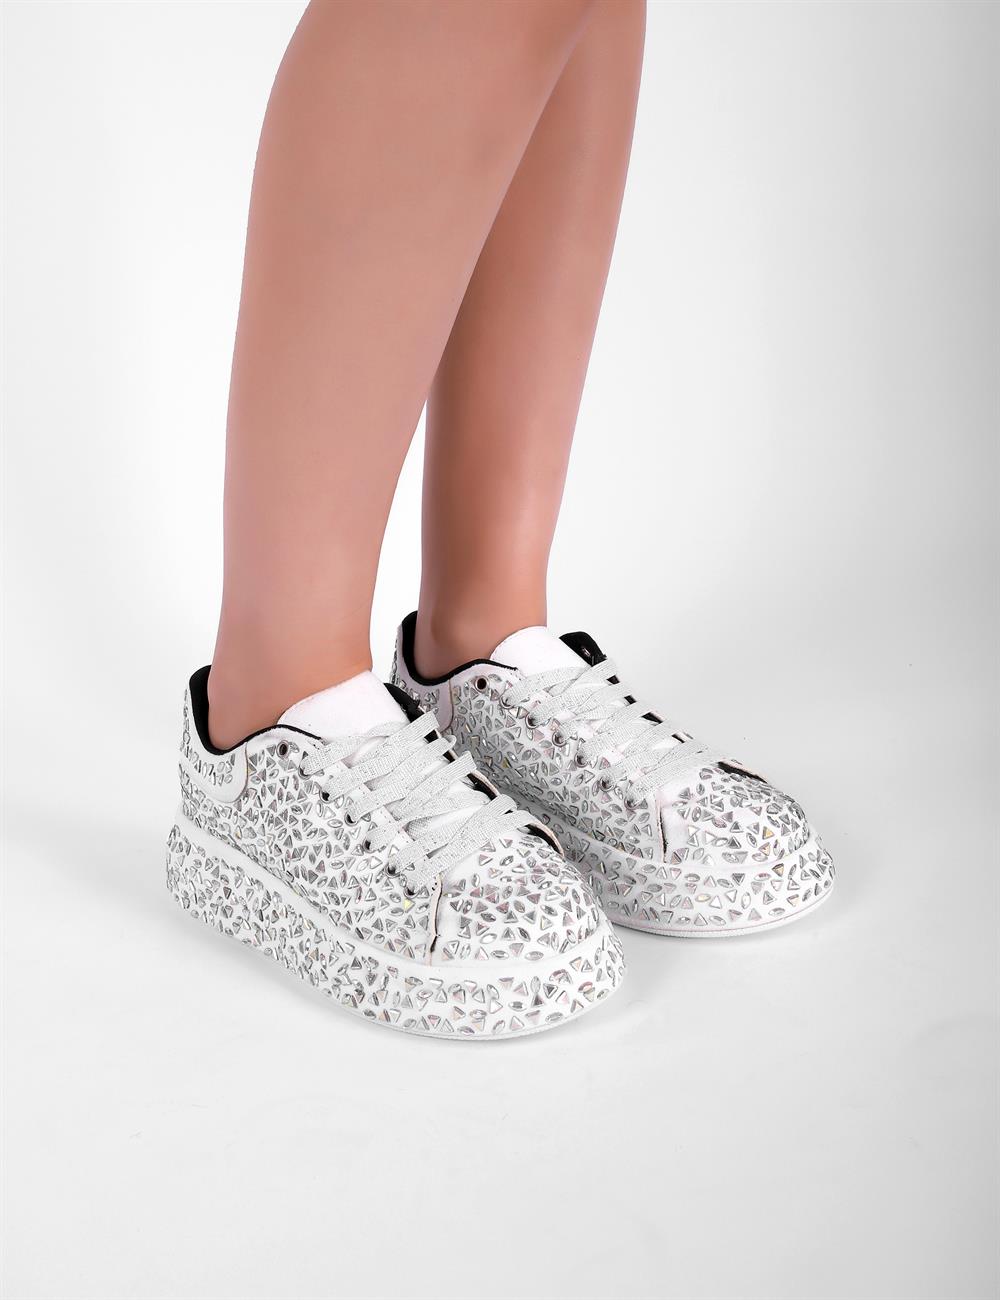 Reny Taşlı Spor Ayakkabı Beyaz - Kadın Ayakkabı